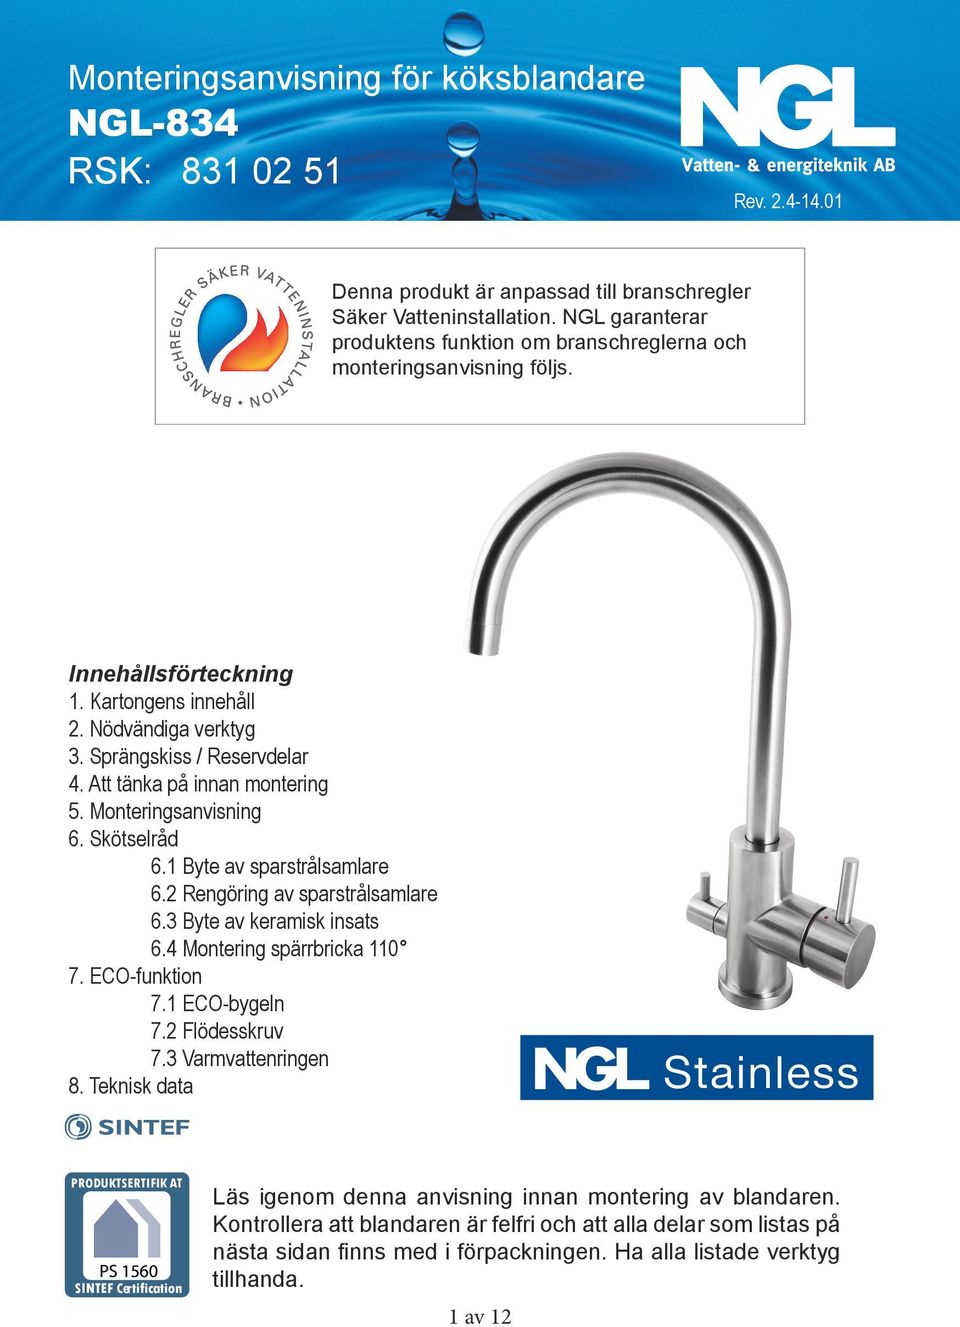 Vatteninstallation.NGL Strand garanterar produktens produktensfunktion funktionom ombranschreglerna branschreglernaoch och monteringsanvisning monteringsanvisning följs. följs. Innehållsförteckning 1.